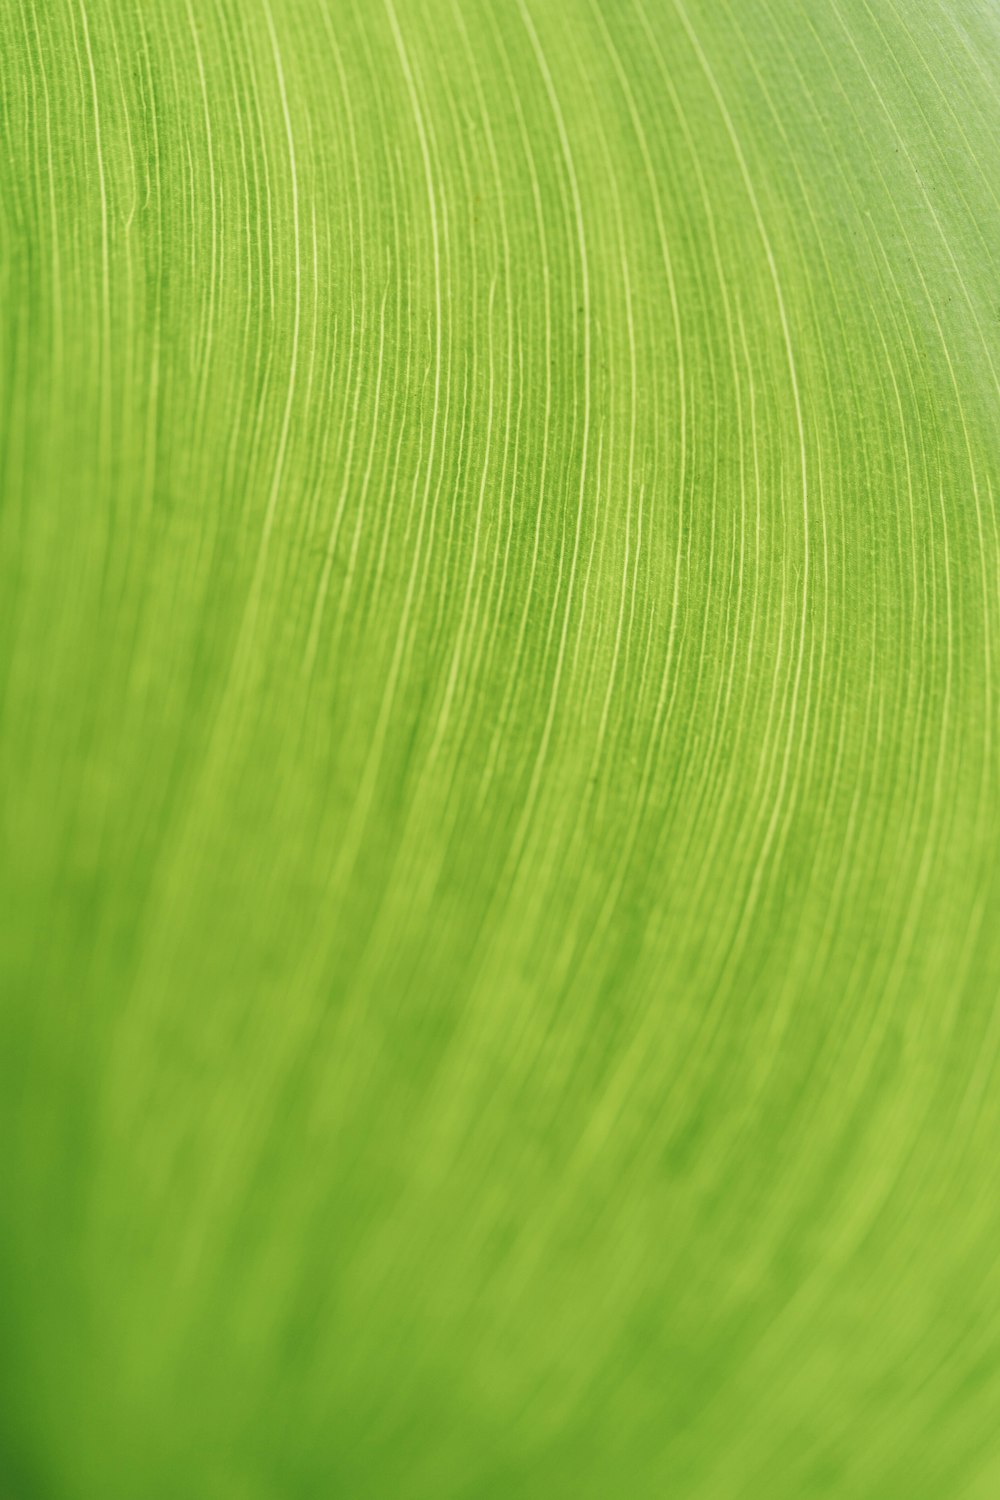 un primer plano de una textura de hoja verde